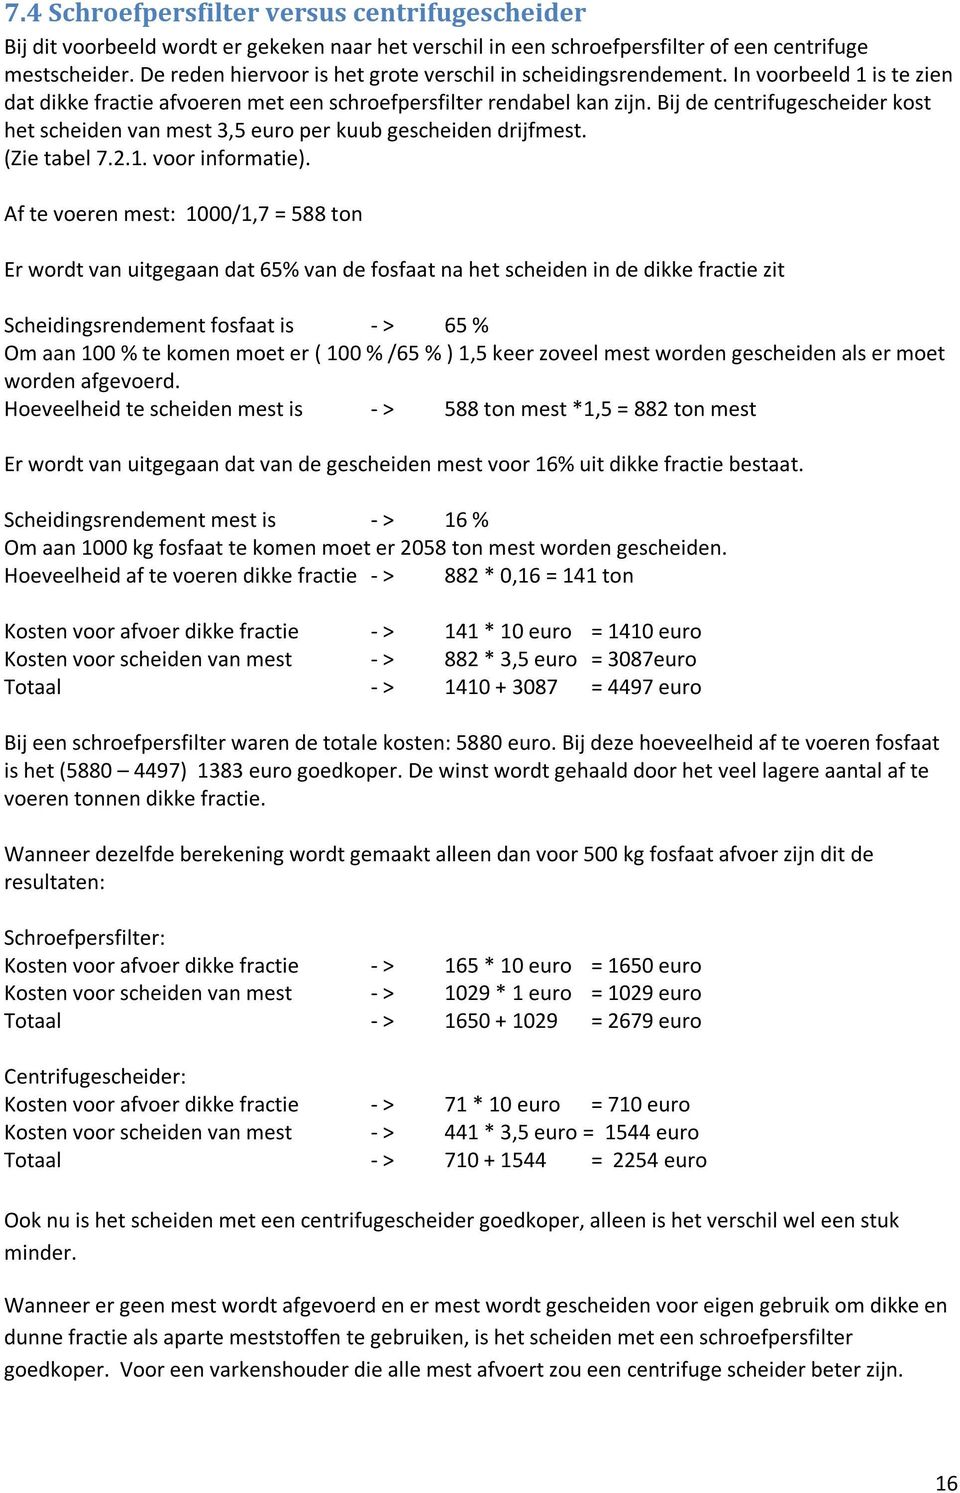 Bij de centrifugescheider kost het scheiden van mest 3,5 euro per kuub gescheiden drijfmest. (Zie tabel 7.2.1. voor informatie).